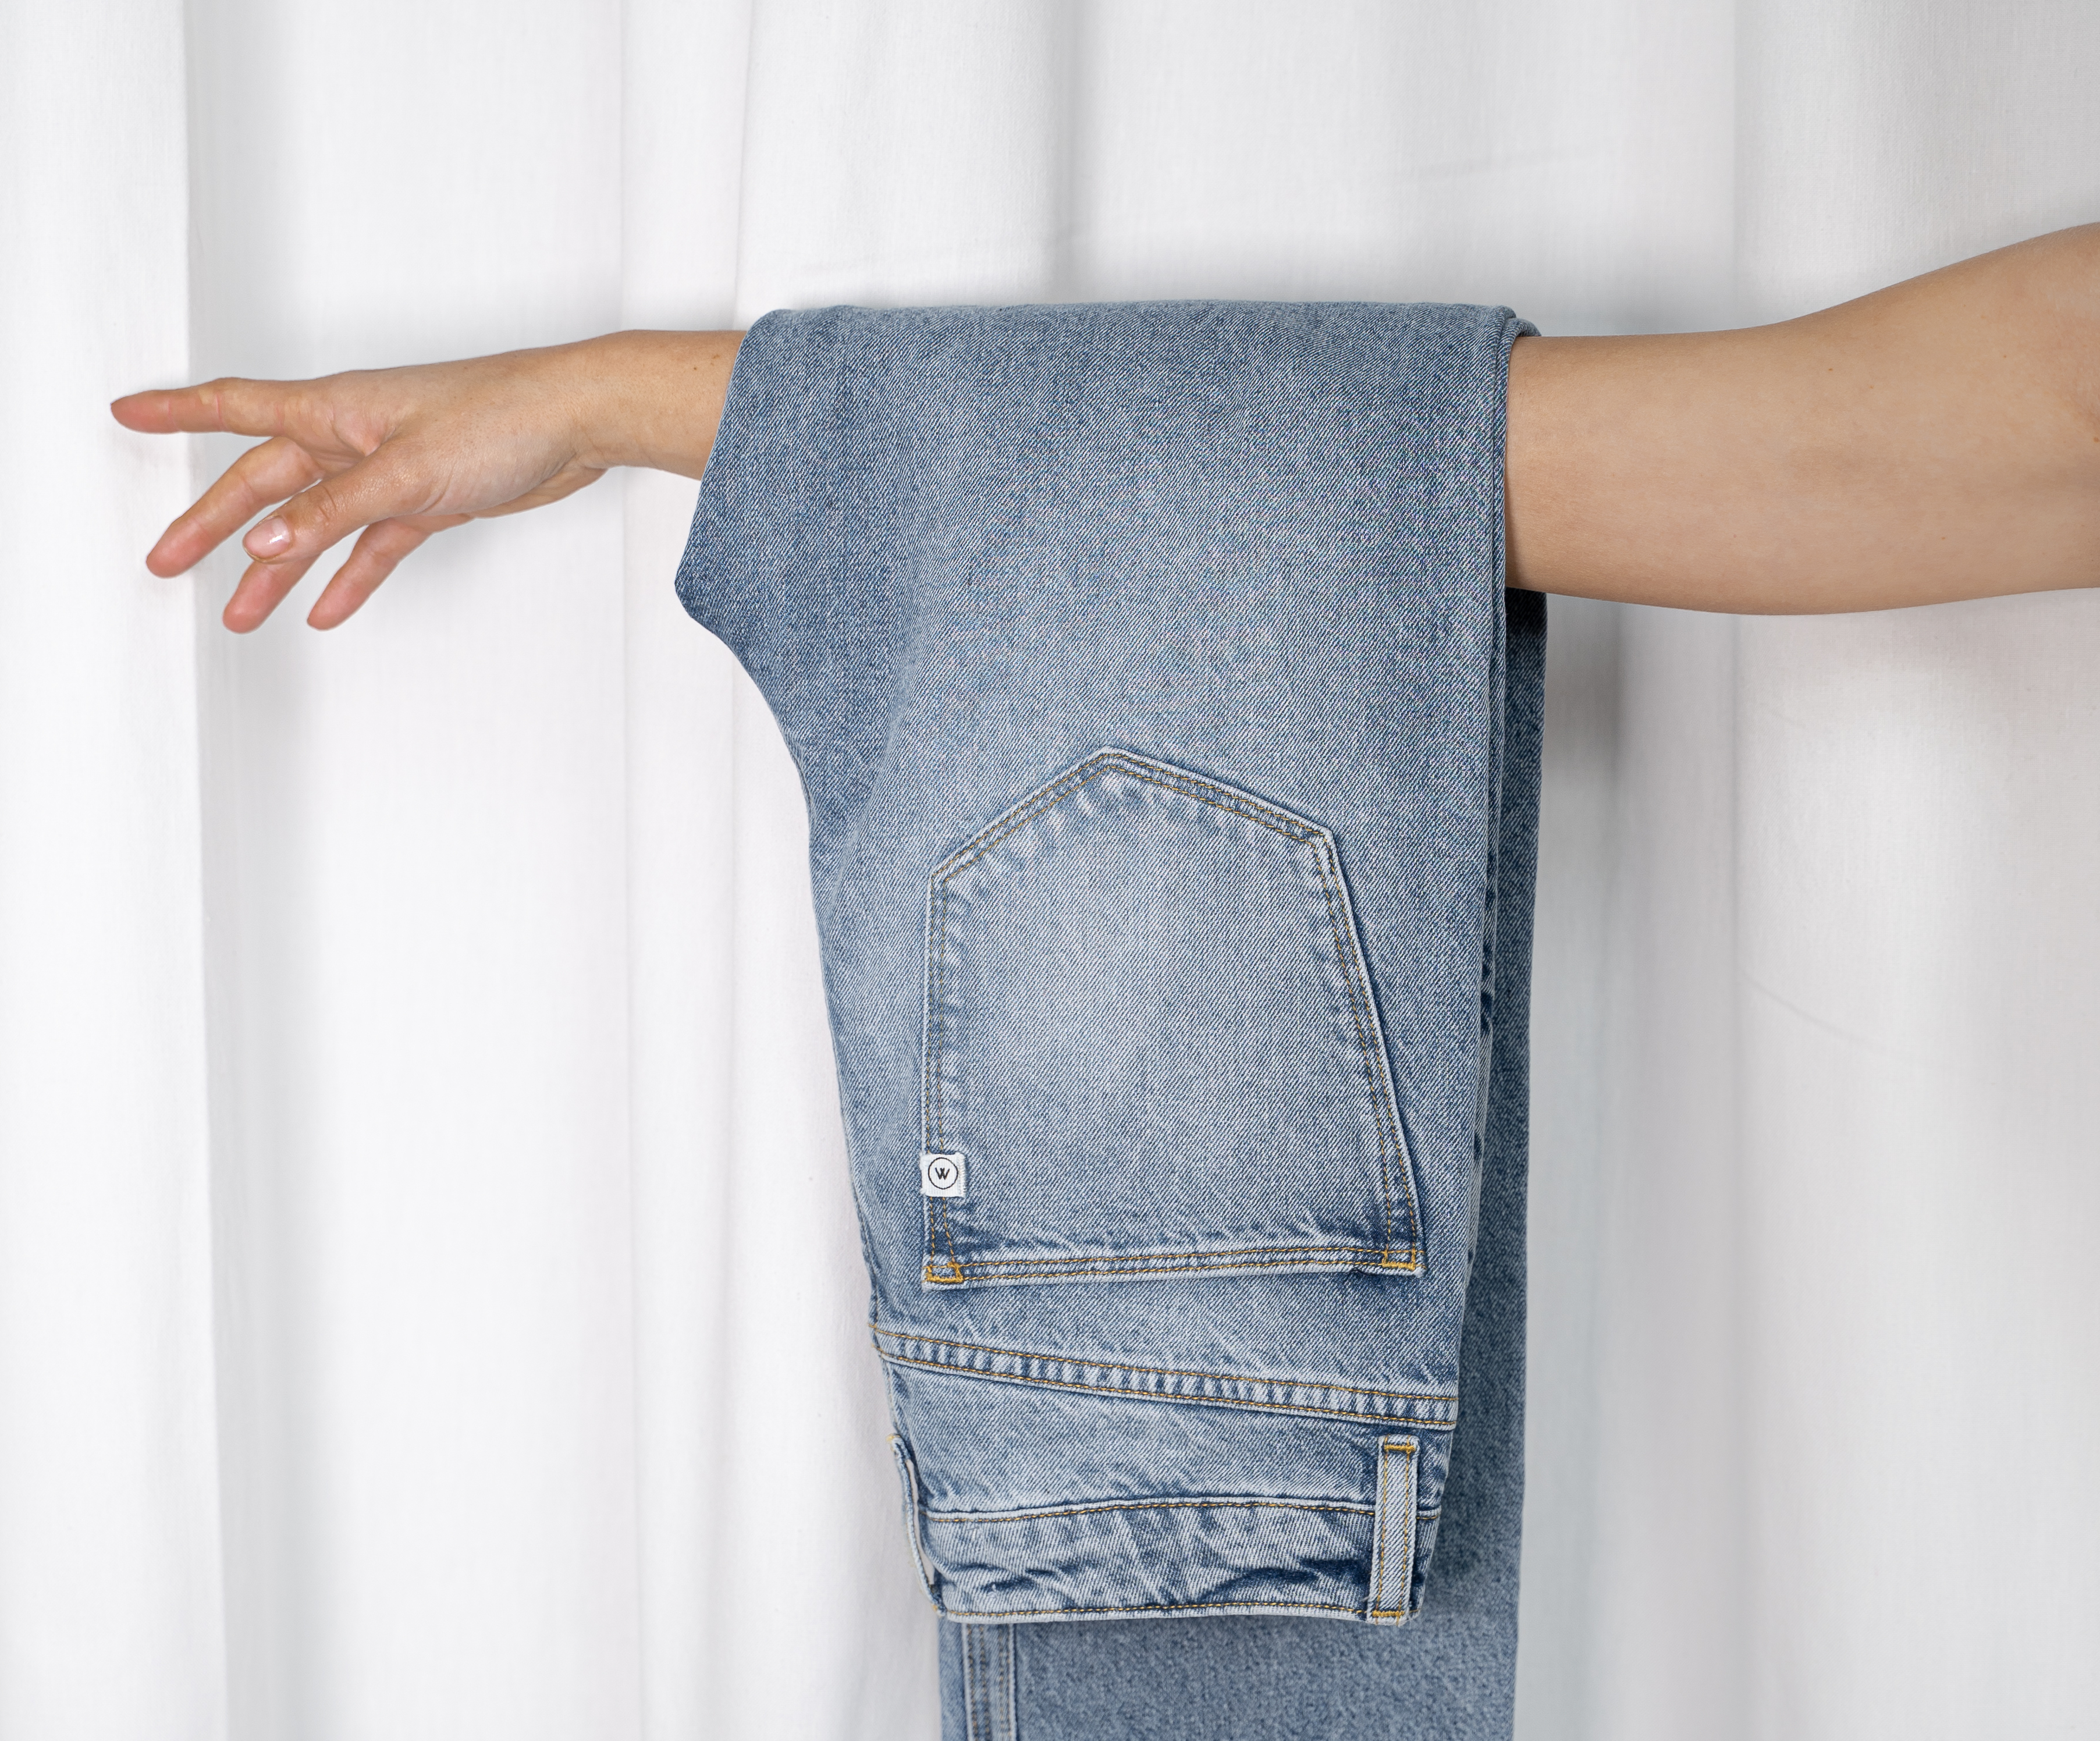 MUD Jeans en Hogeschool Saxion ontwikkelen eerste volledig circulaire jeans ter wereld